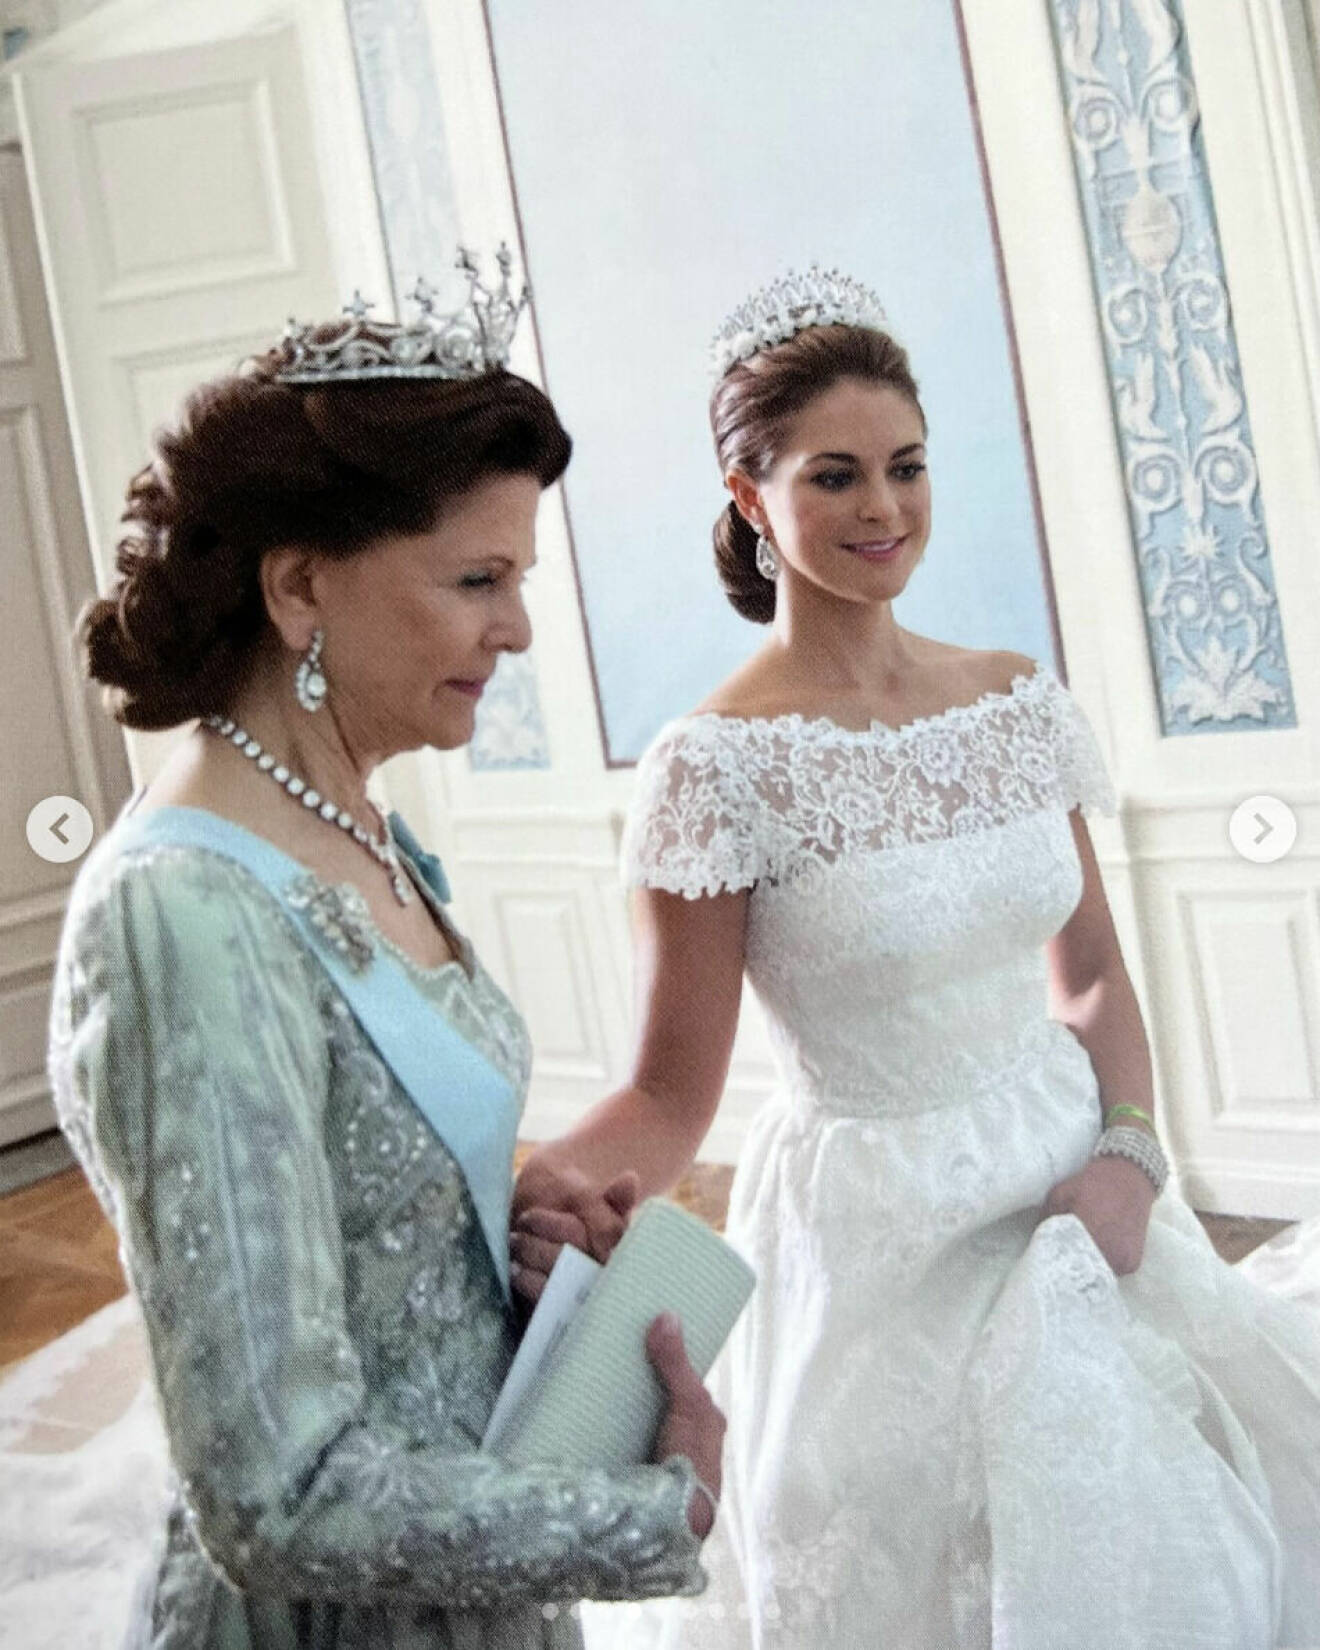 Prinsessan Madeleine i brudklänning i samband med sitt bröllop som håller hand med drottning Silvia